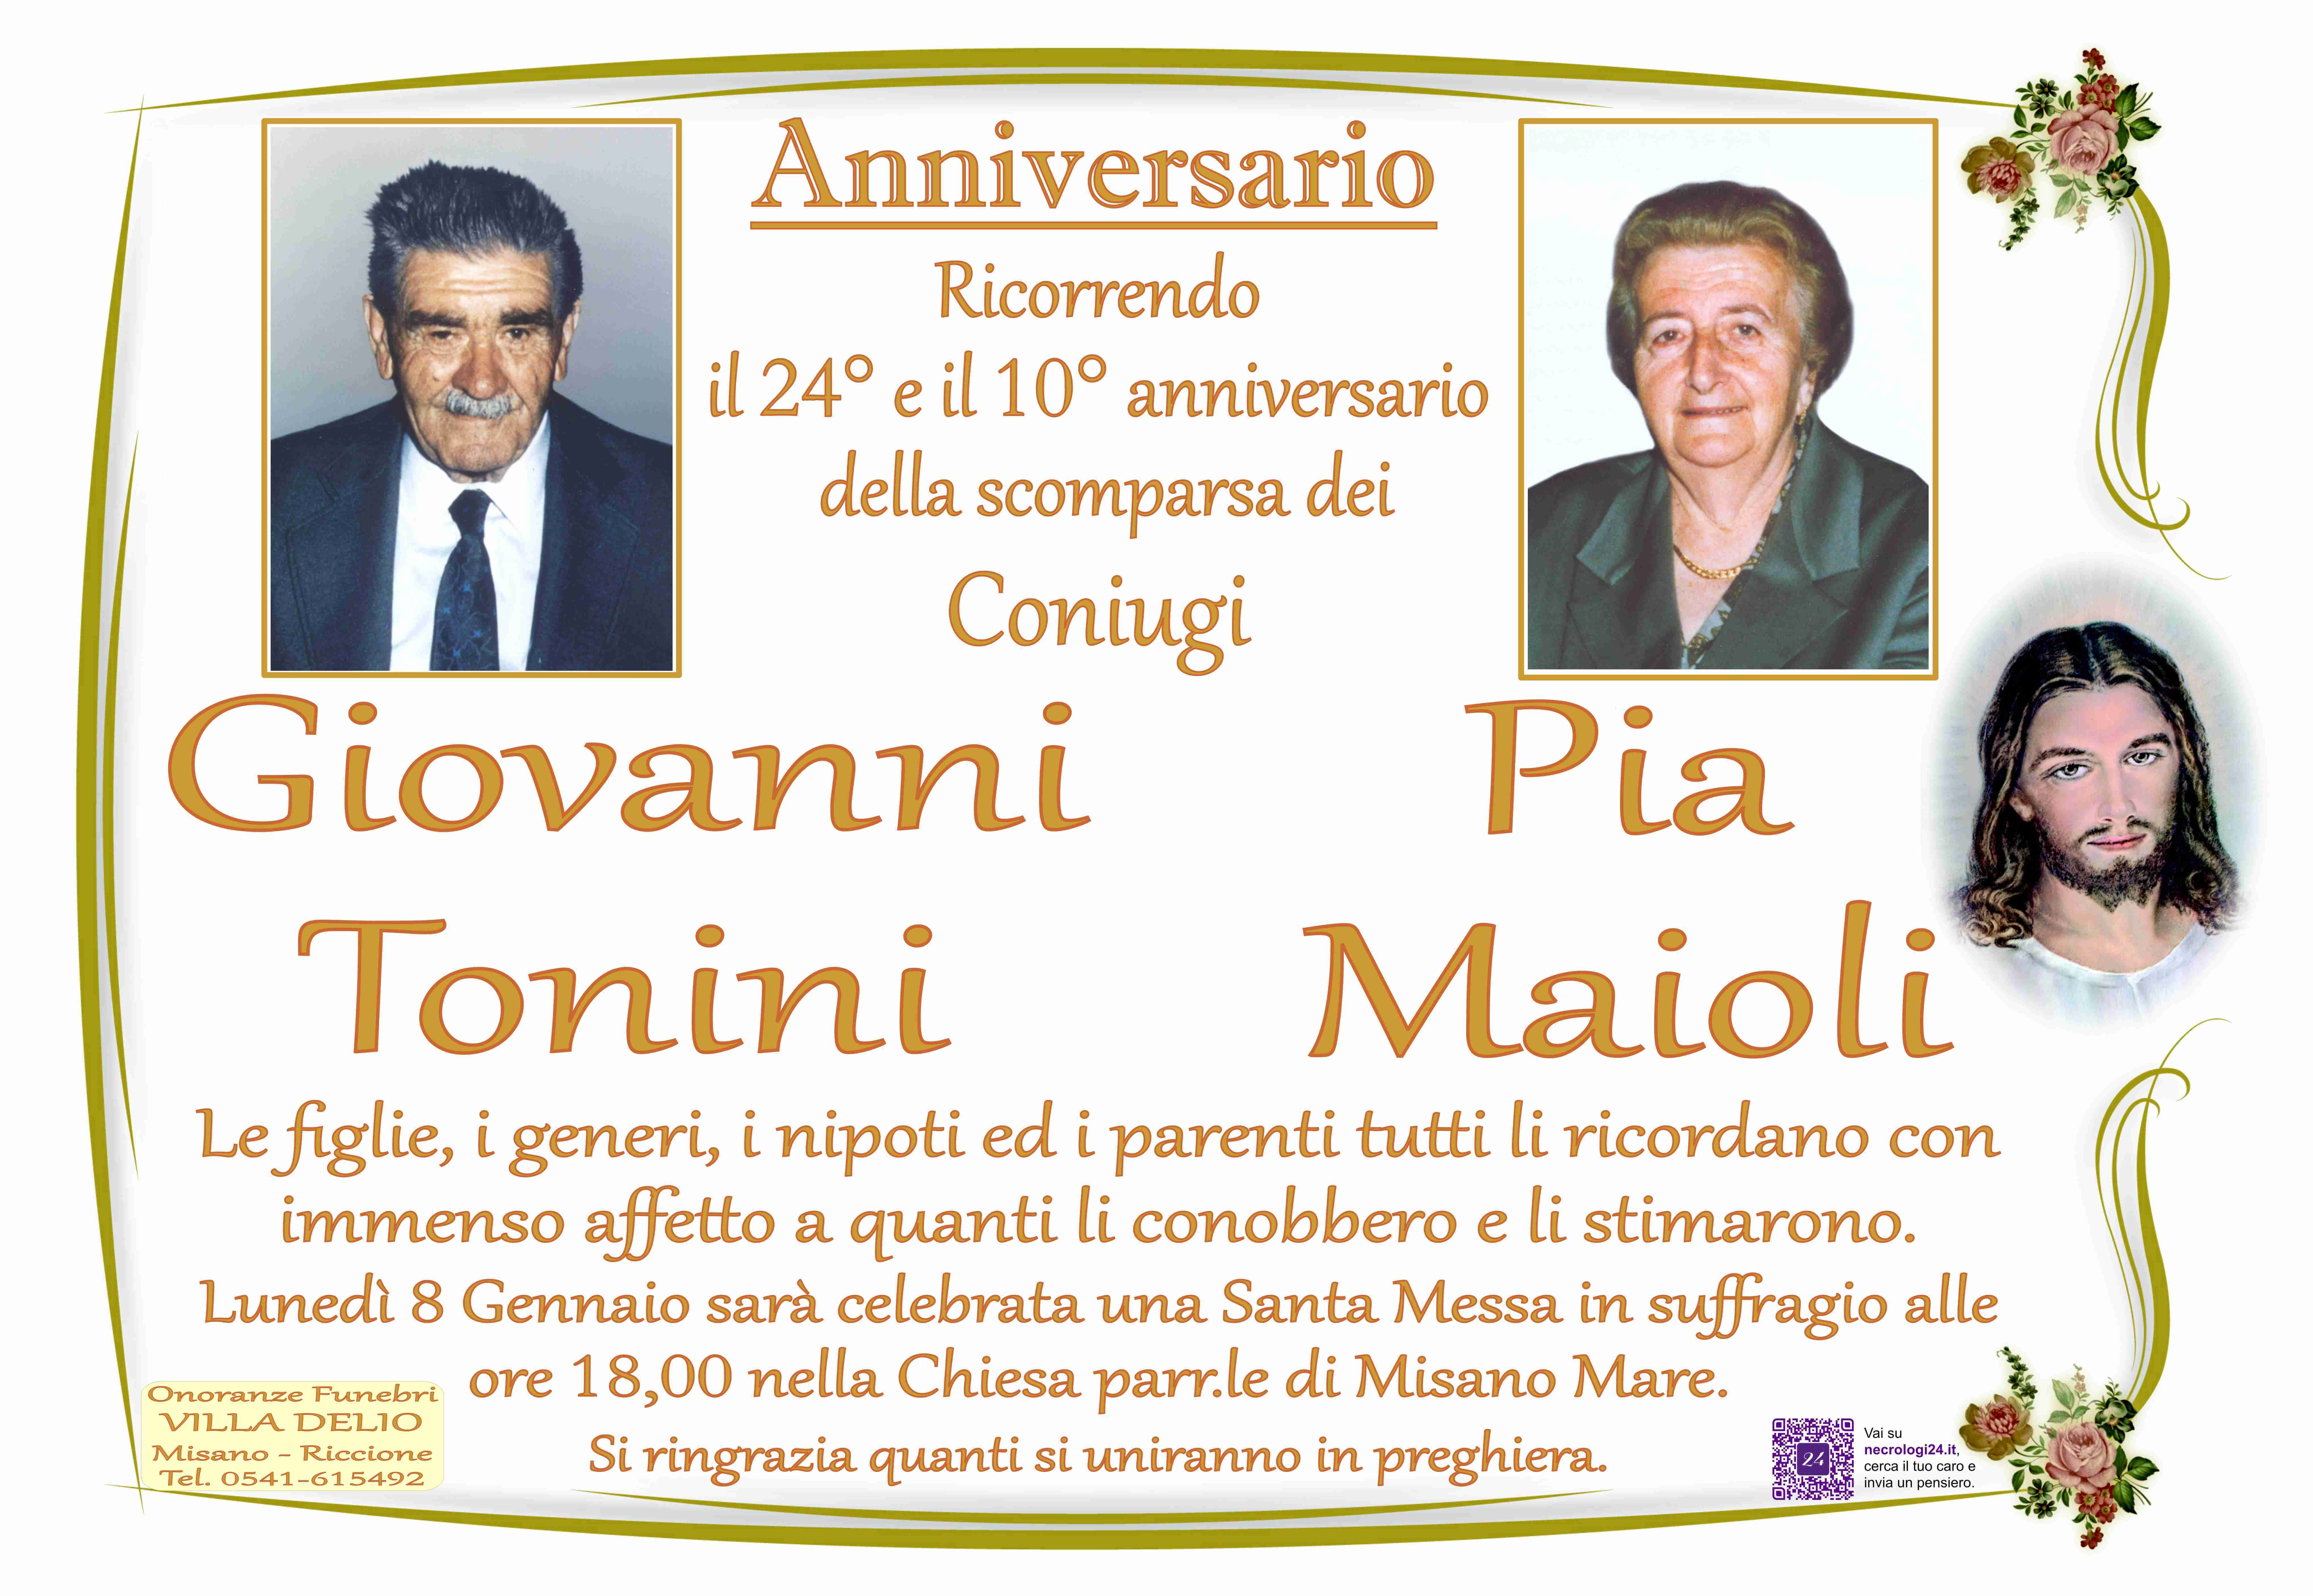 Giovanni Tonini e Pia Maioli